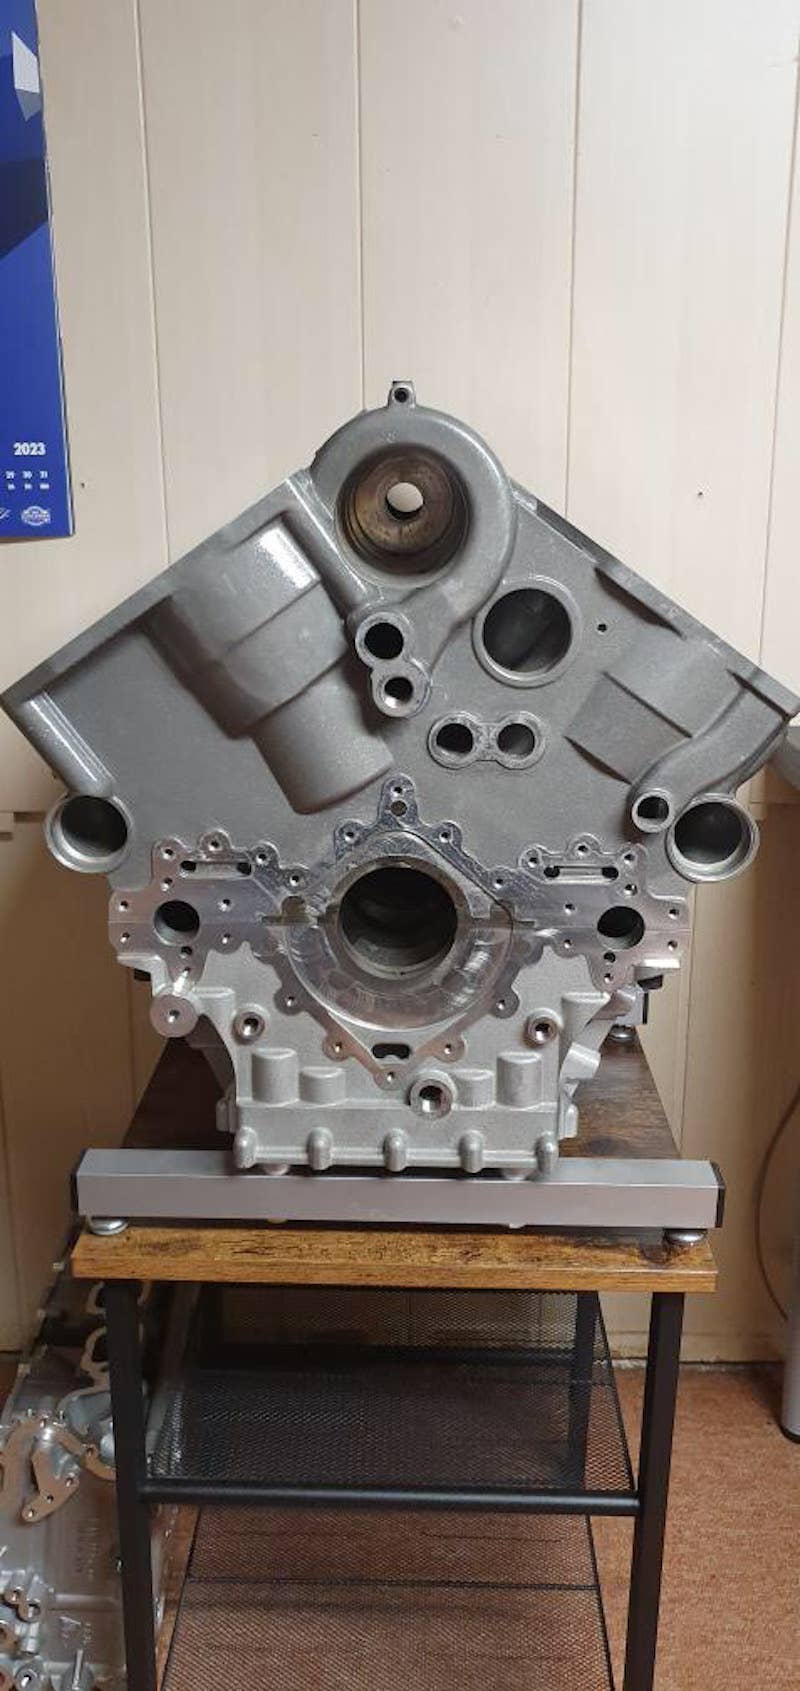 Volkswagen W10 engine prototype engine block, front end